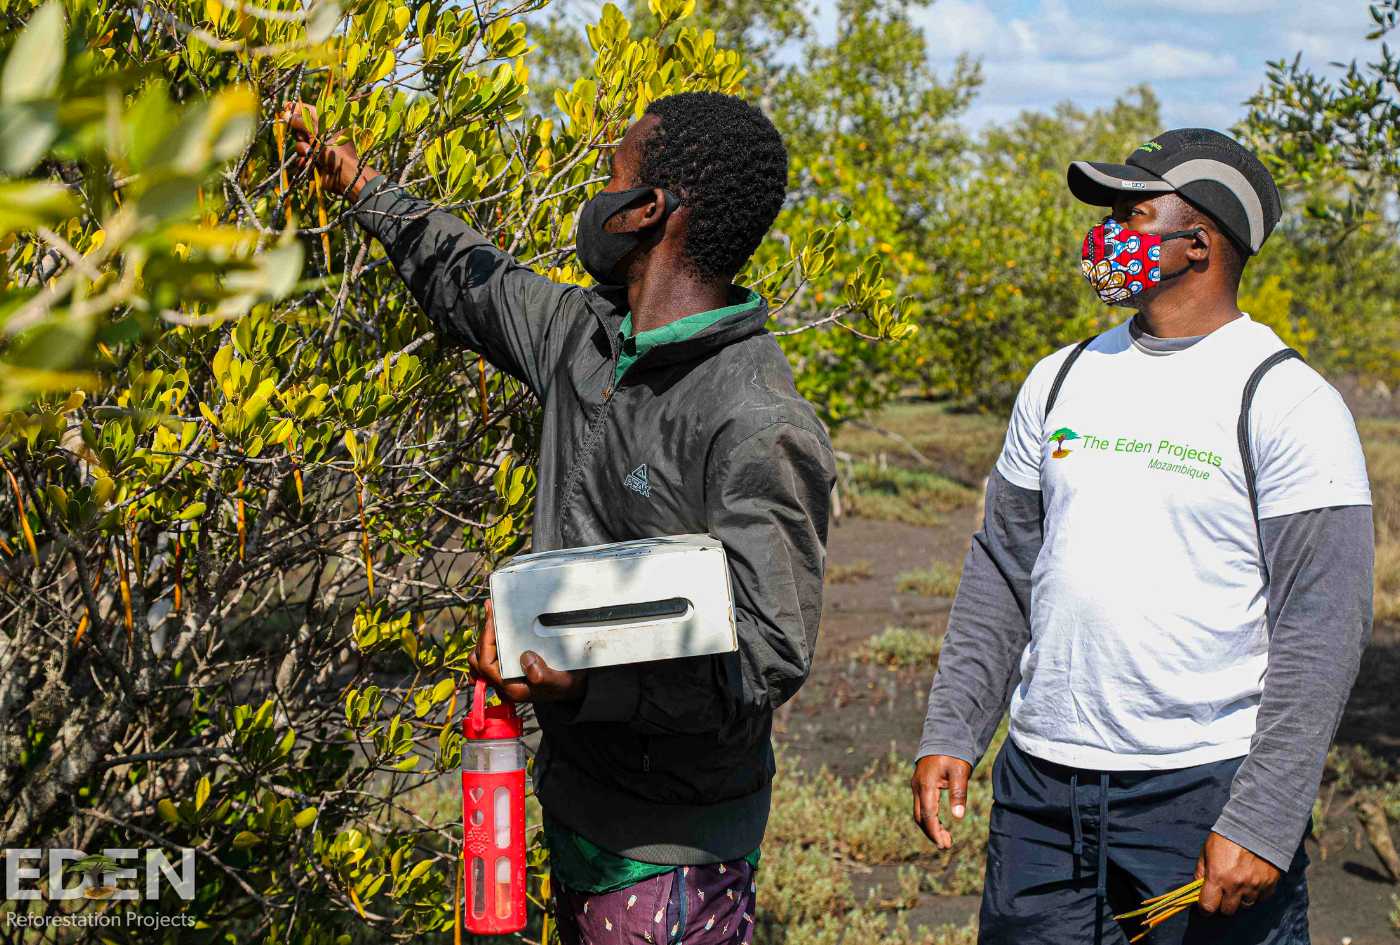 Twee mannen evalueren de boomgroei en maken aantekeningen